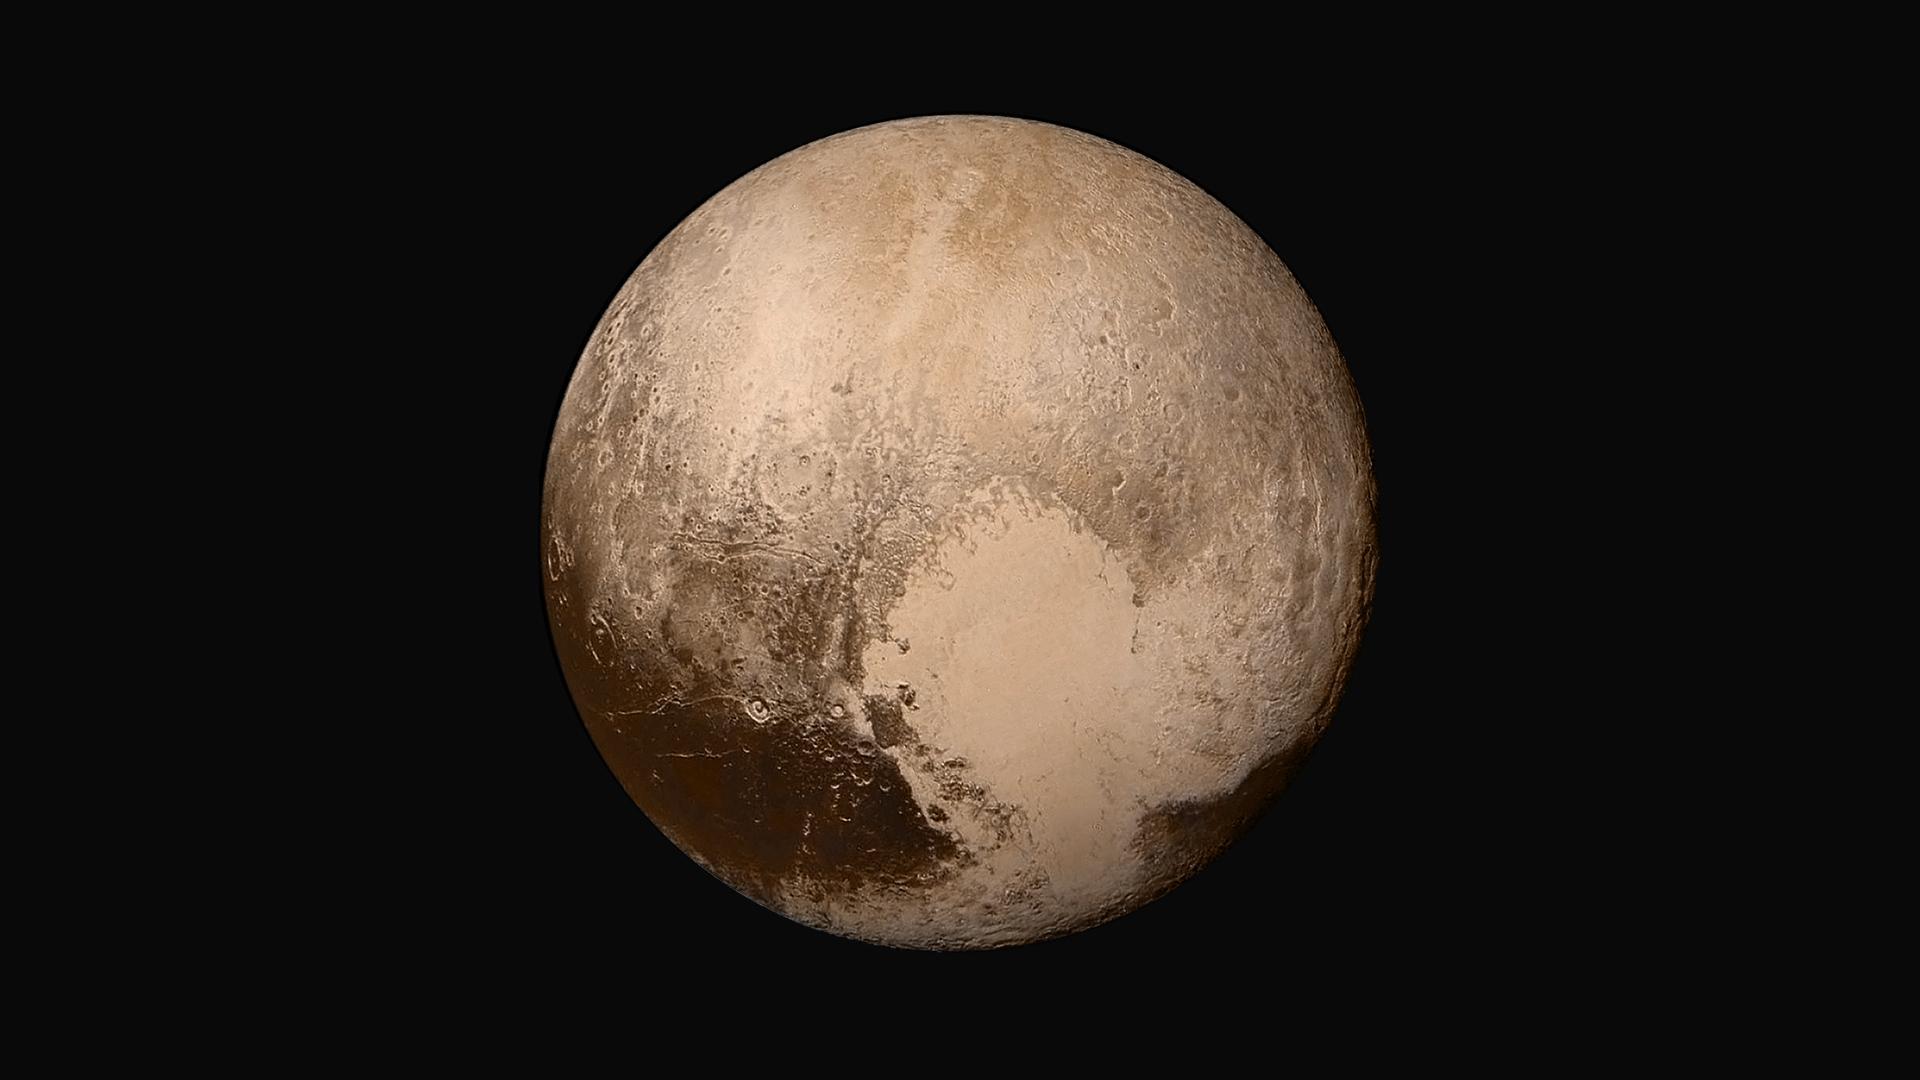 A true-color image of Pluto